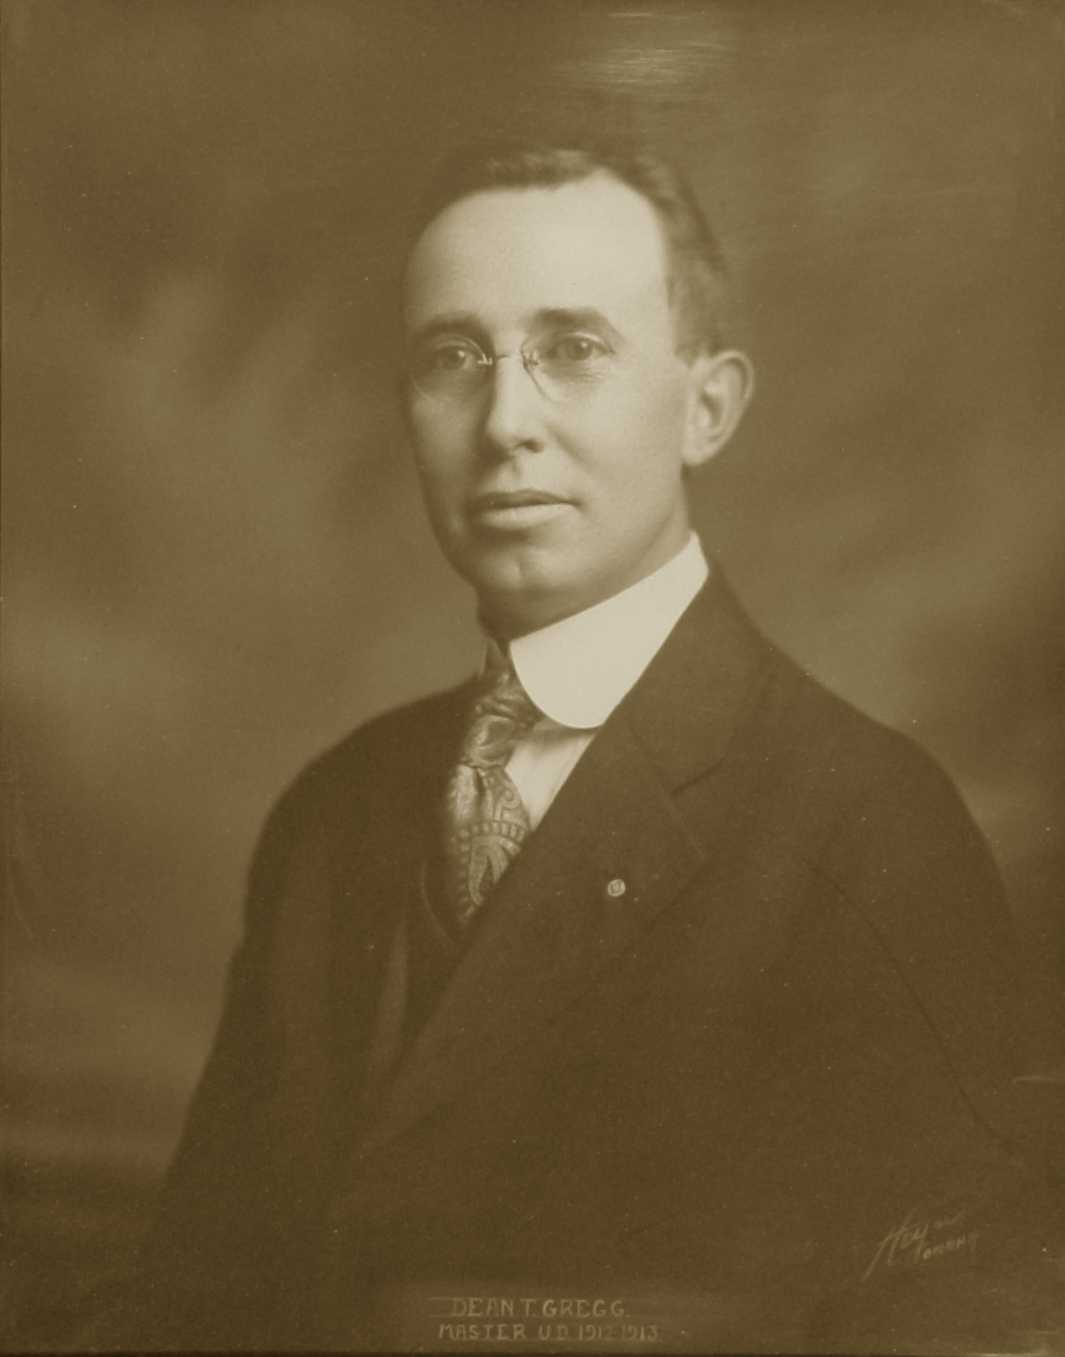 Dean Gregg, 1913 (U.D.)